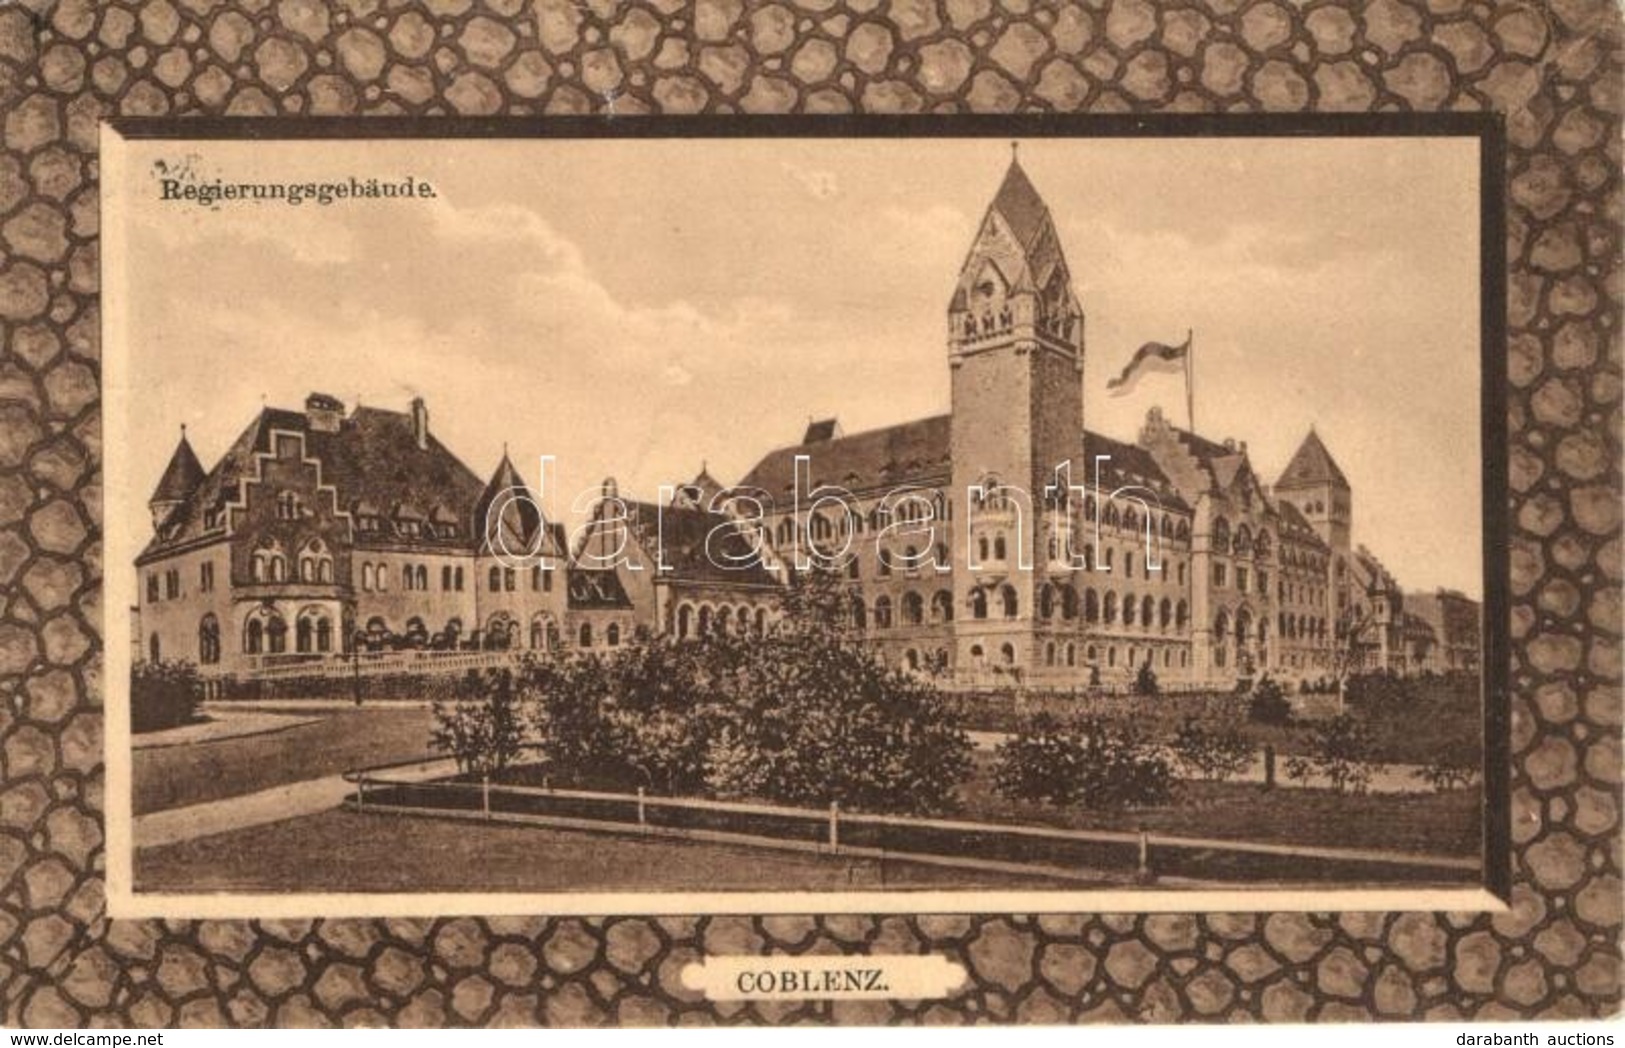 T2 Koblenz, Coblenz; Regierungsgebäude / Government Buildings - Unclassified